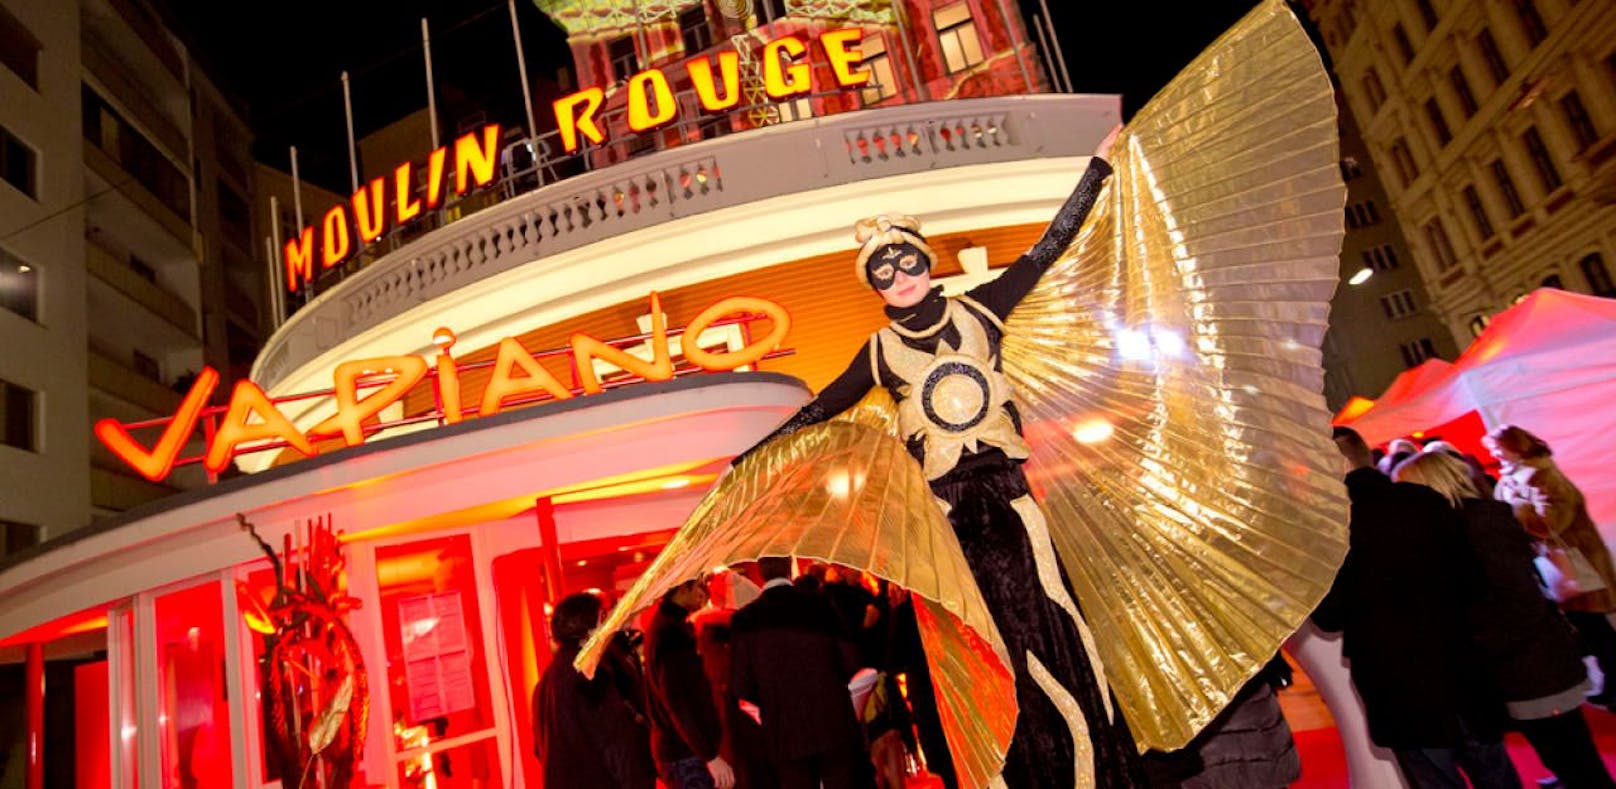 Eine Vapiano-Filiale eröffnete im ehemaligen Moulin Rouge in Wien.